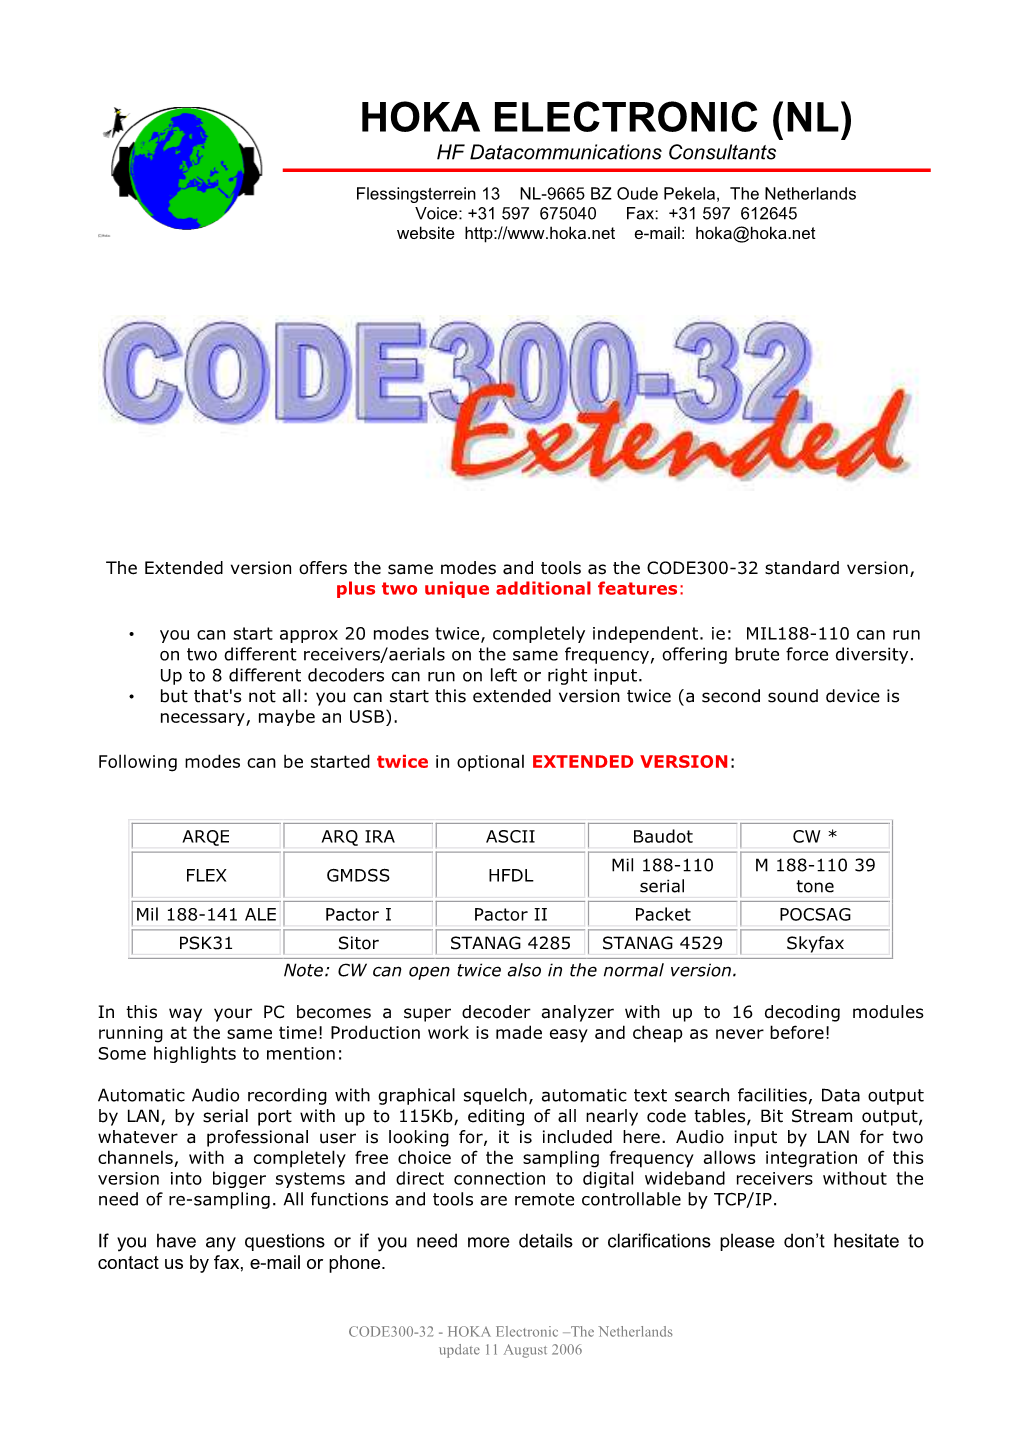 Data Sheet Code300-32 Extended